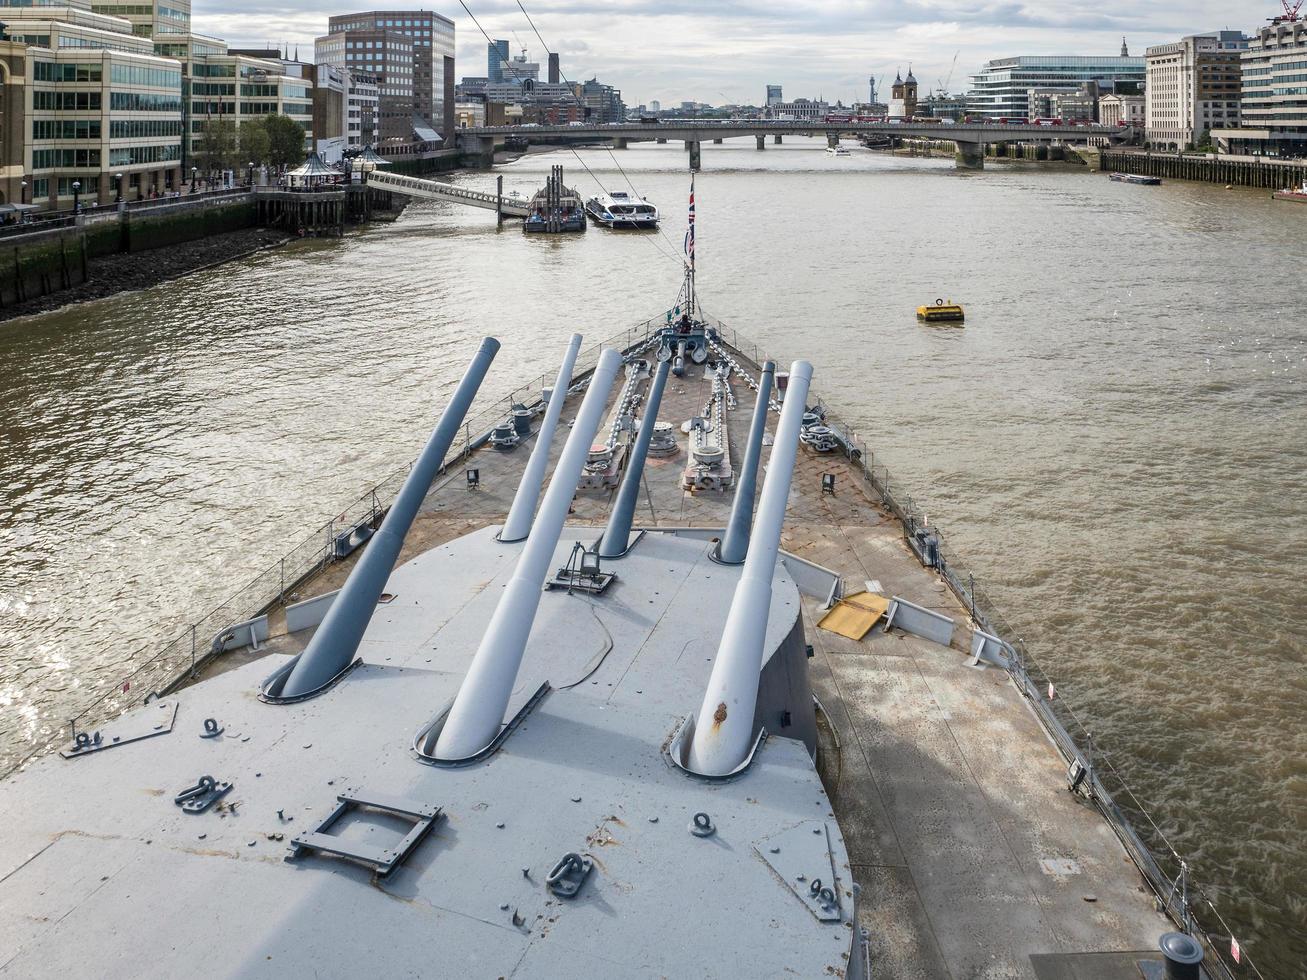 london, Storbritannien, 2016. gun turret på hms belfast foto